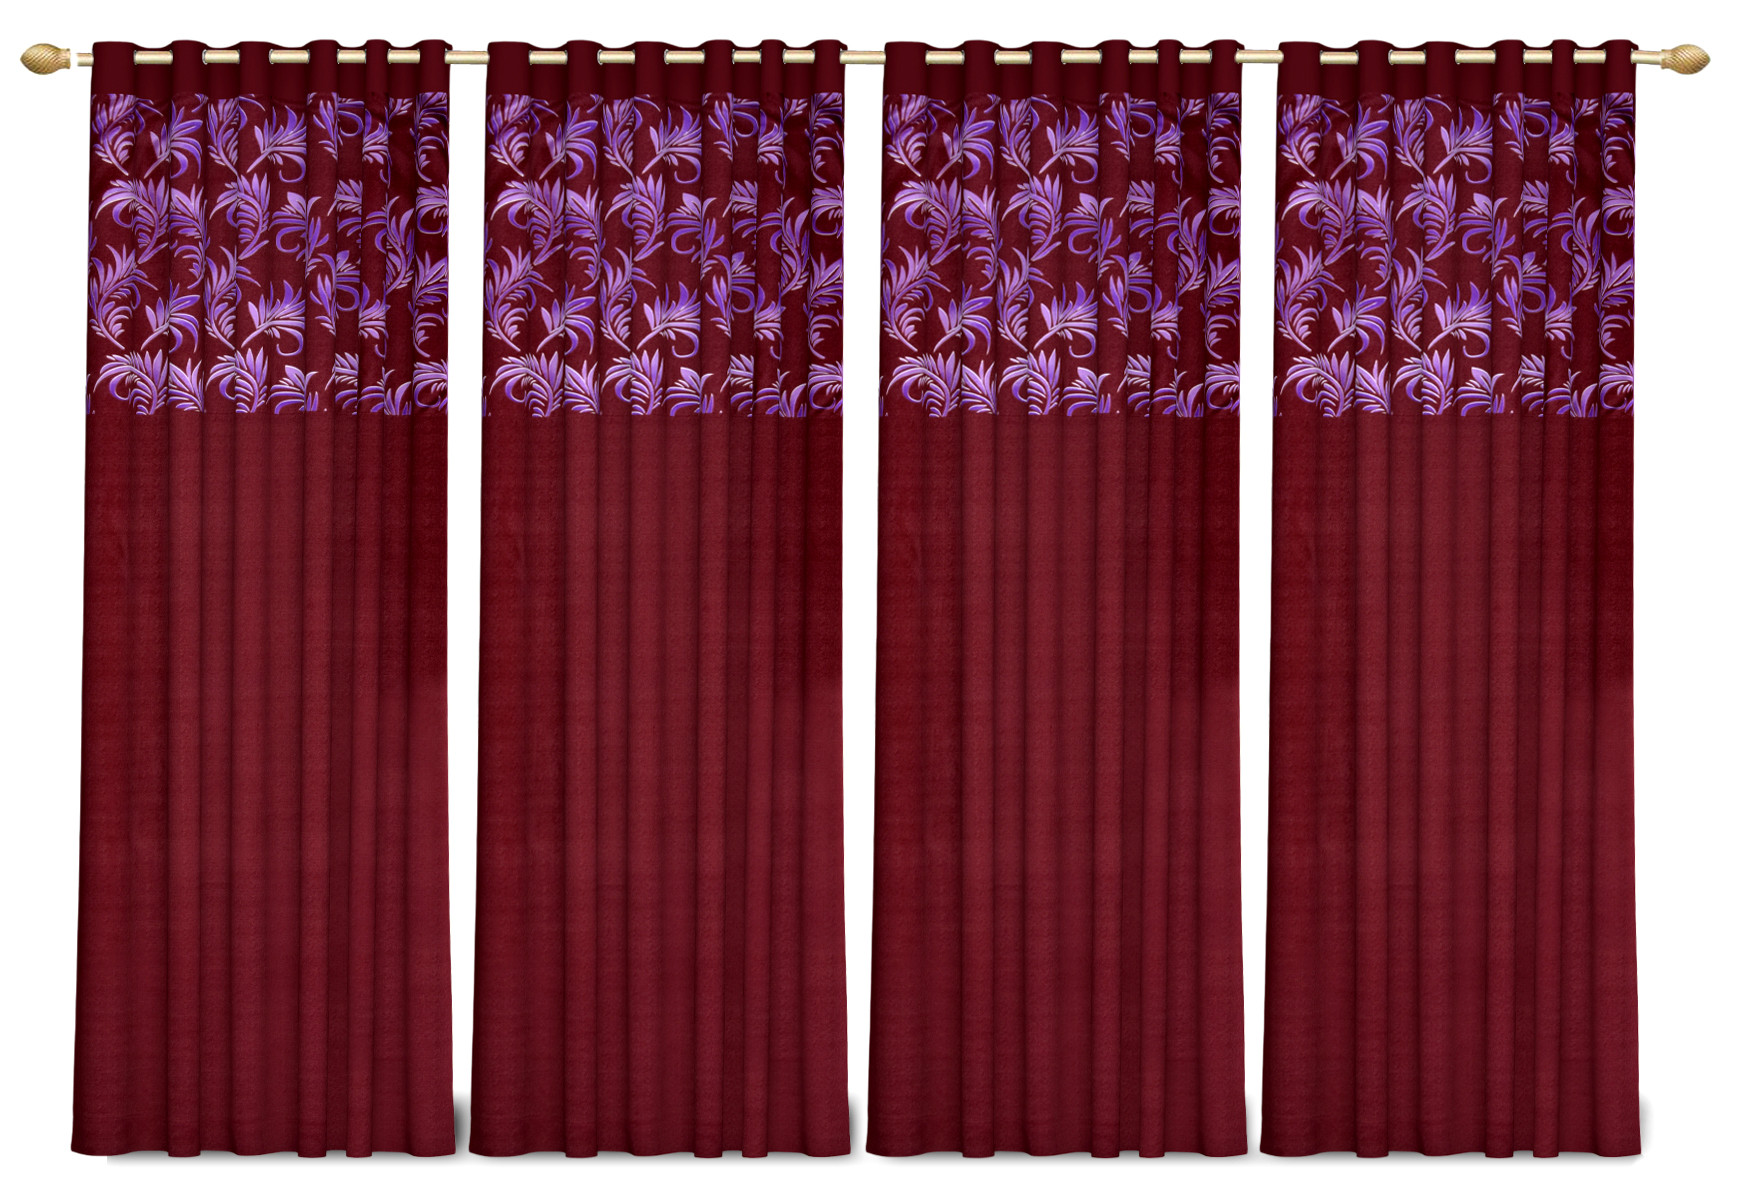 Kuber Industries Leaf Print Room Darkening Door Curtain, 7 Feet (Maroon)